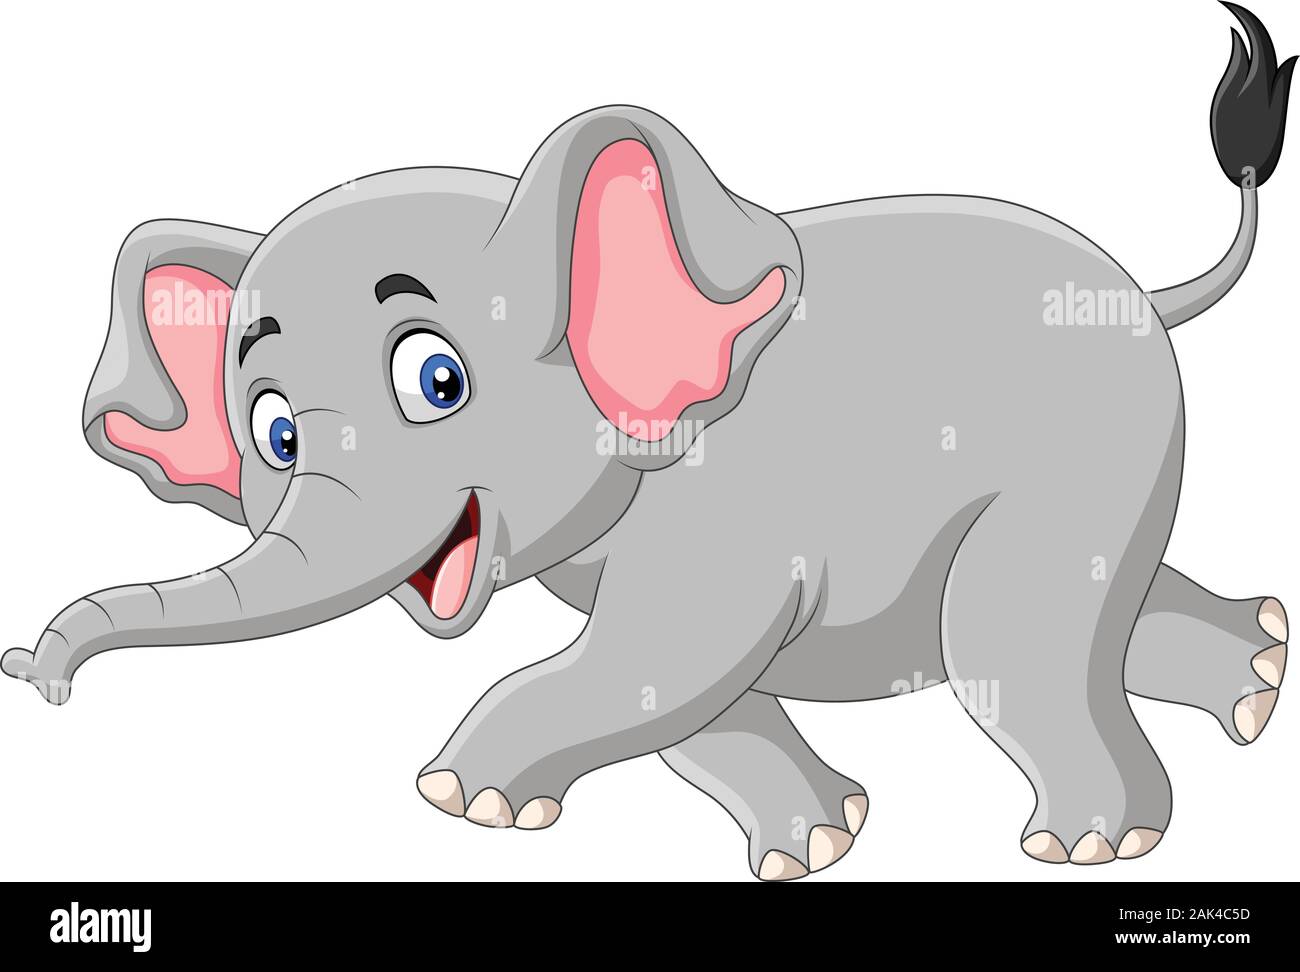 Cartoon elephant isolated on white background Stock Vector Image & Art -  Alamy